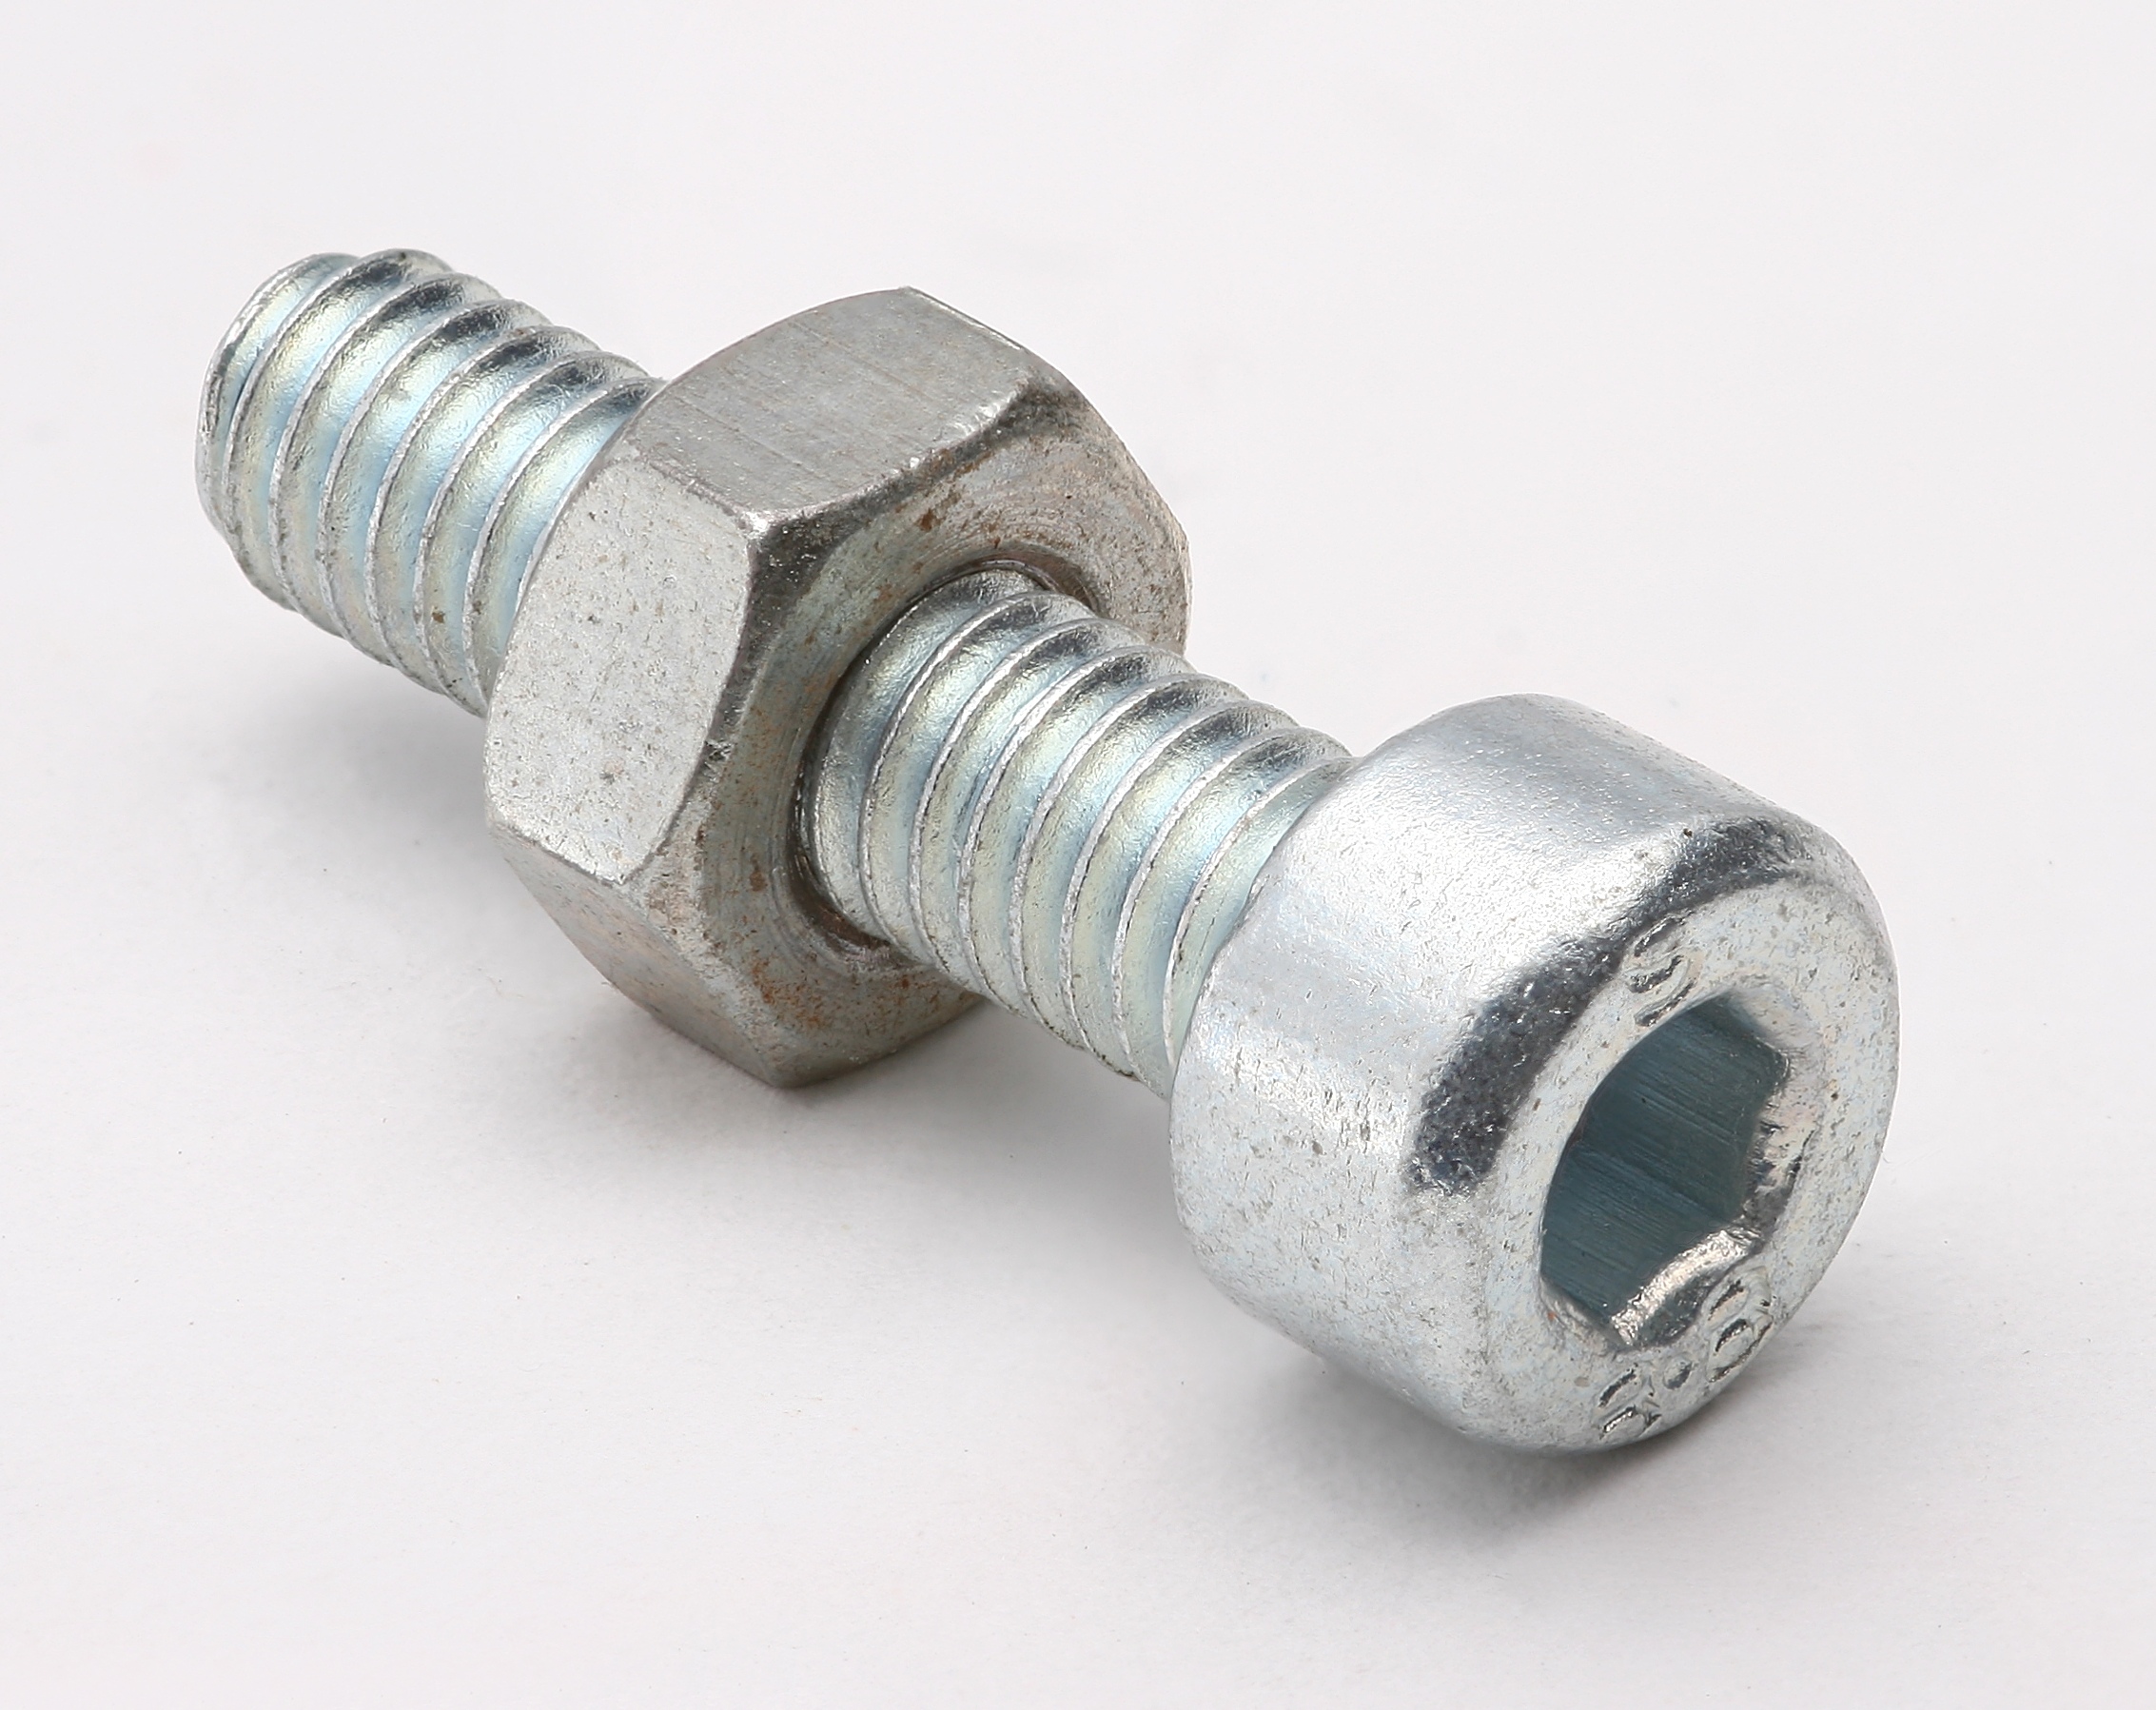 M20 x 2 1/2" x 1/2" Flat Knurled Nut Thumb Nuts Adjusting Aluminum Alloy 3/4”-10 